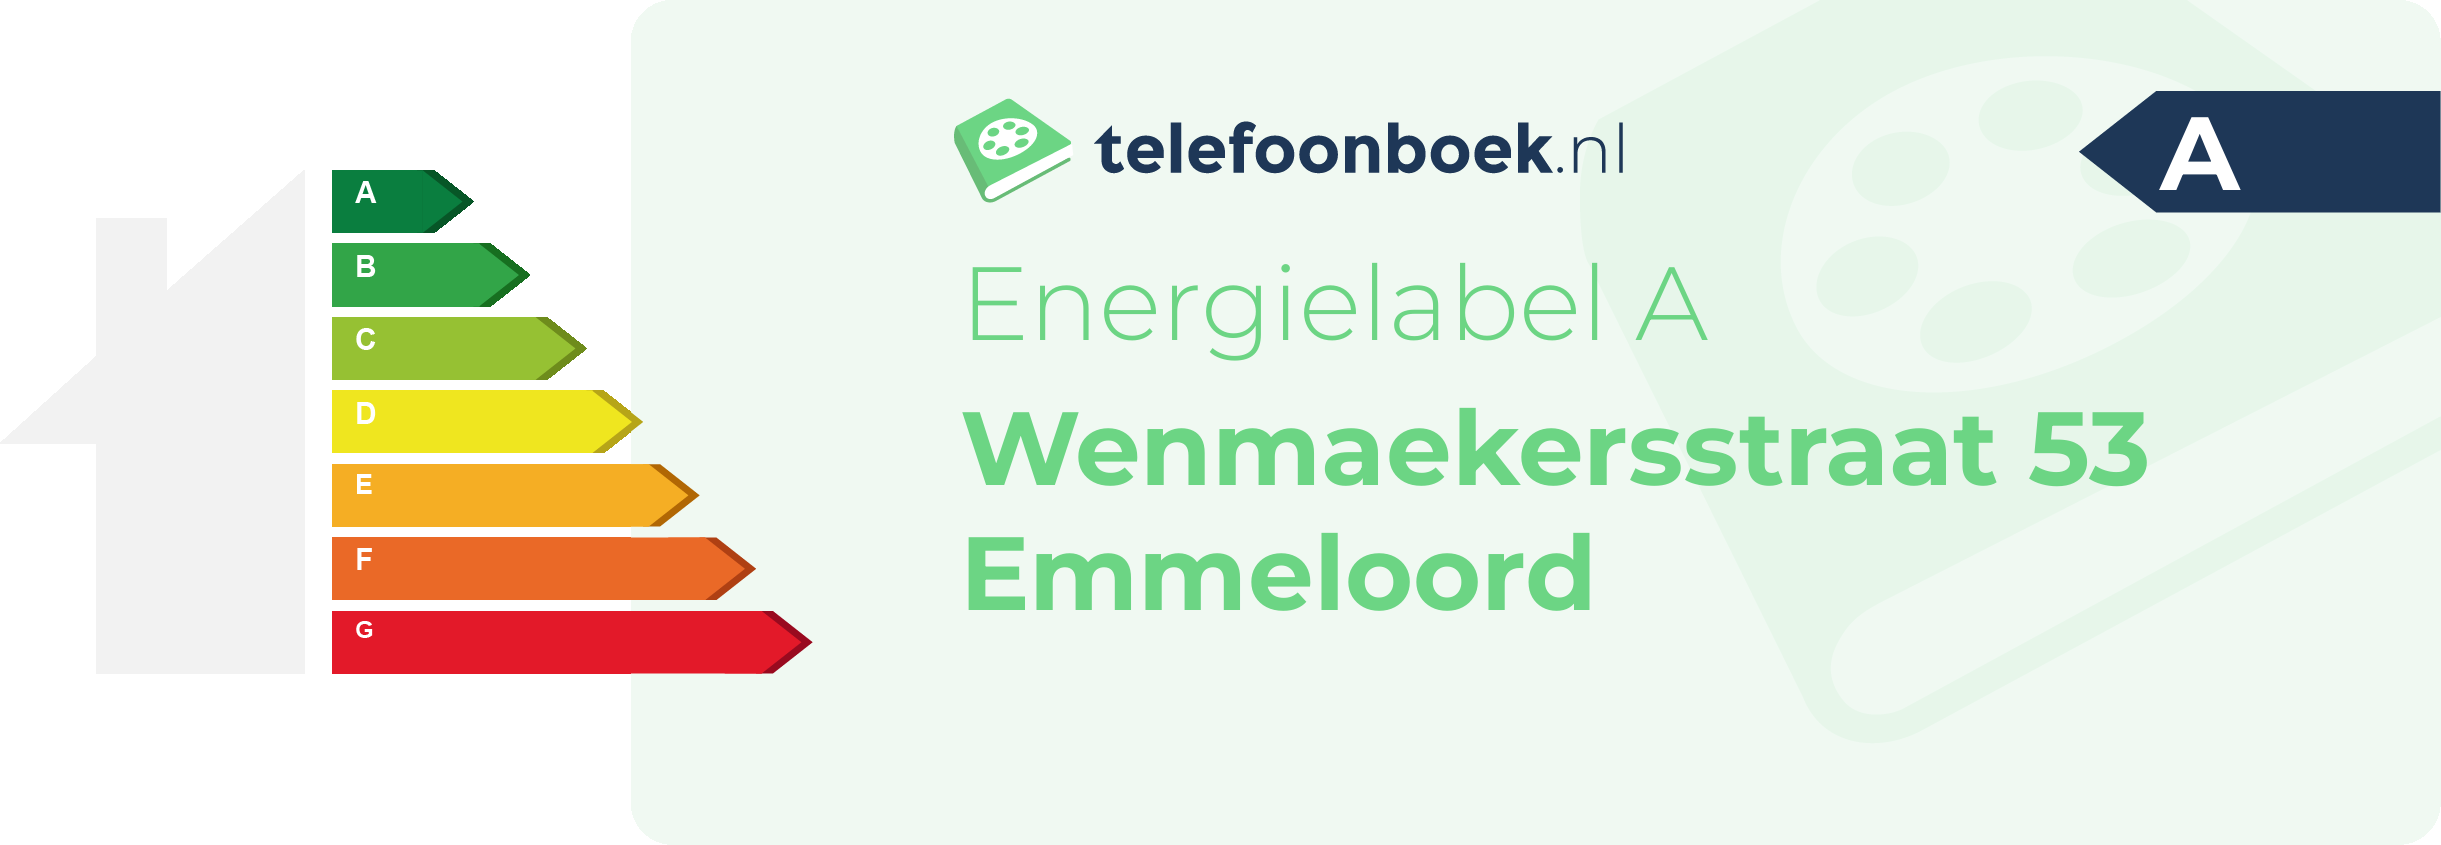 Energielabel Wenmaekersstraat 53 Emmeloord